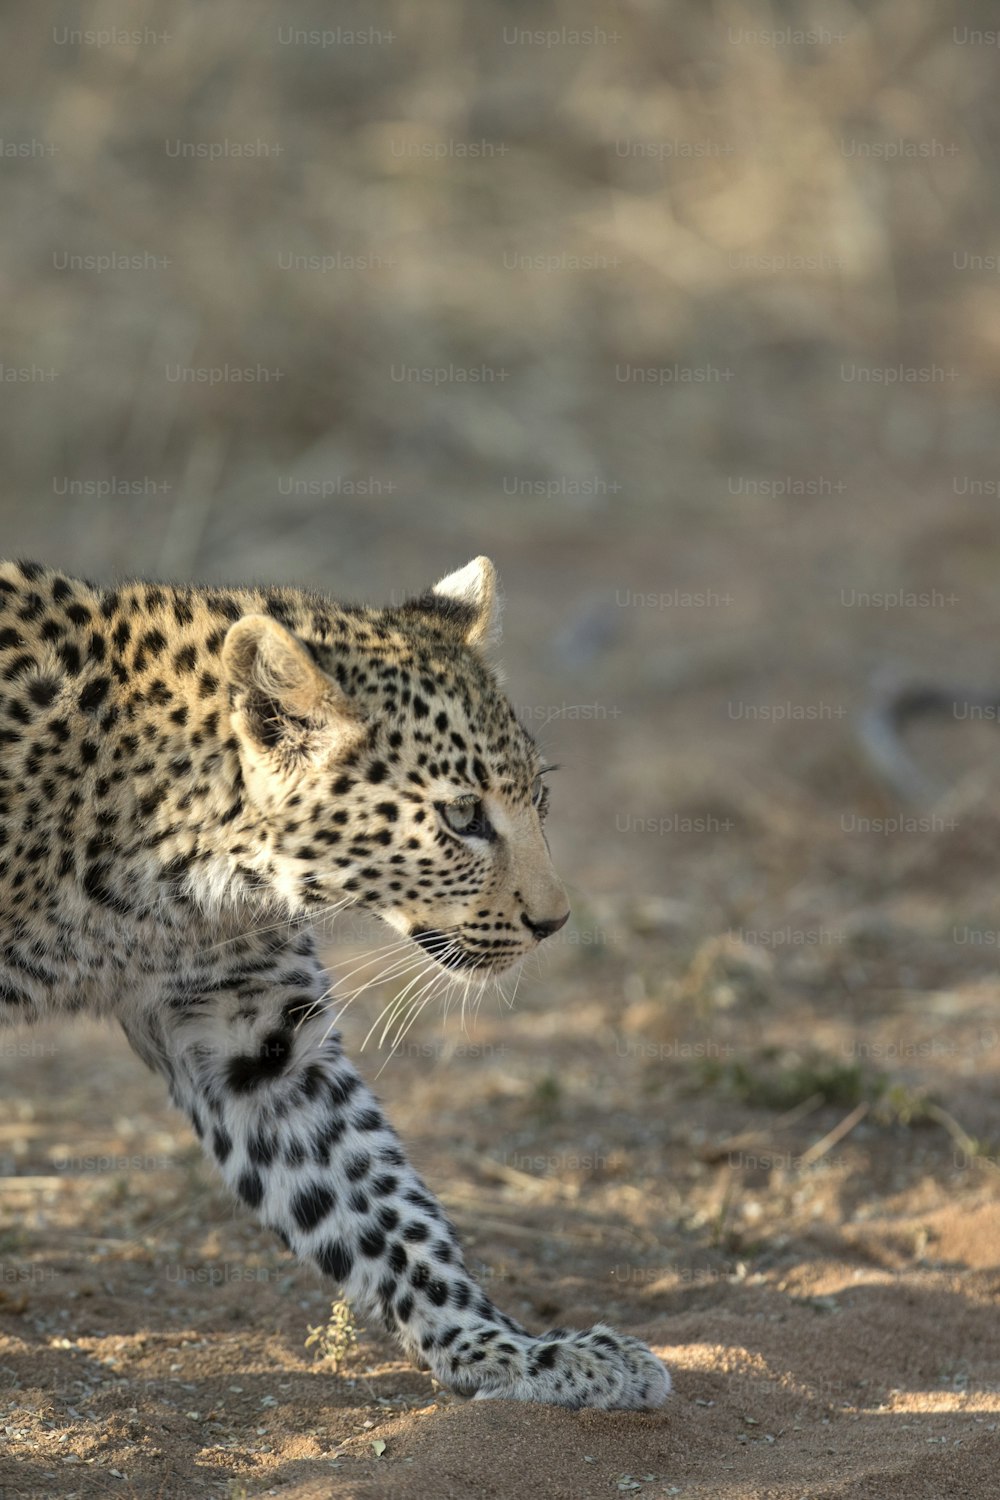 Leopard cub walking in morning light